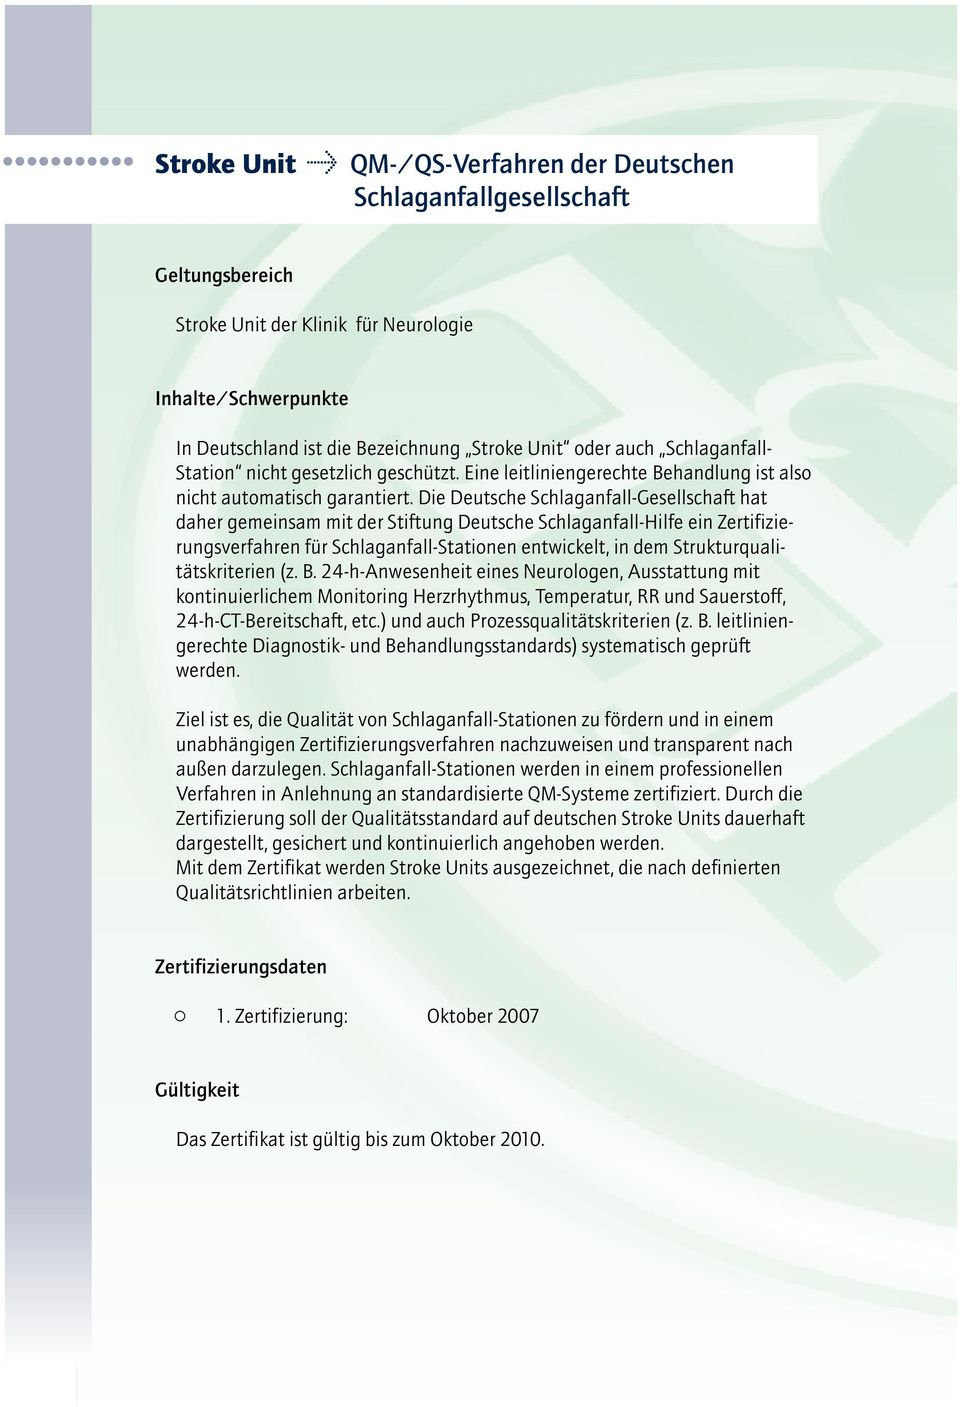 Die Deutsche Schlaganfall-Gesellschaft hat daher gemeinsam mit der Stiftung Deutsche Schlaganfall-Hilfe ein Zertifizierungsverfahren für Schlaganfall-Stationen entwickelt, in dem